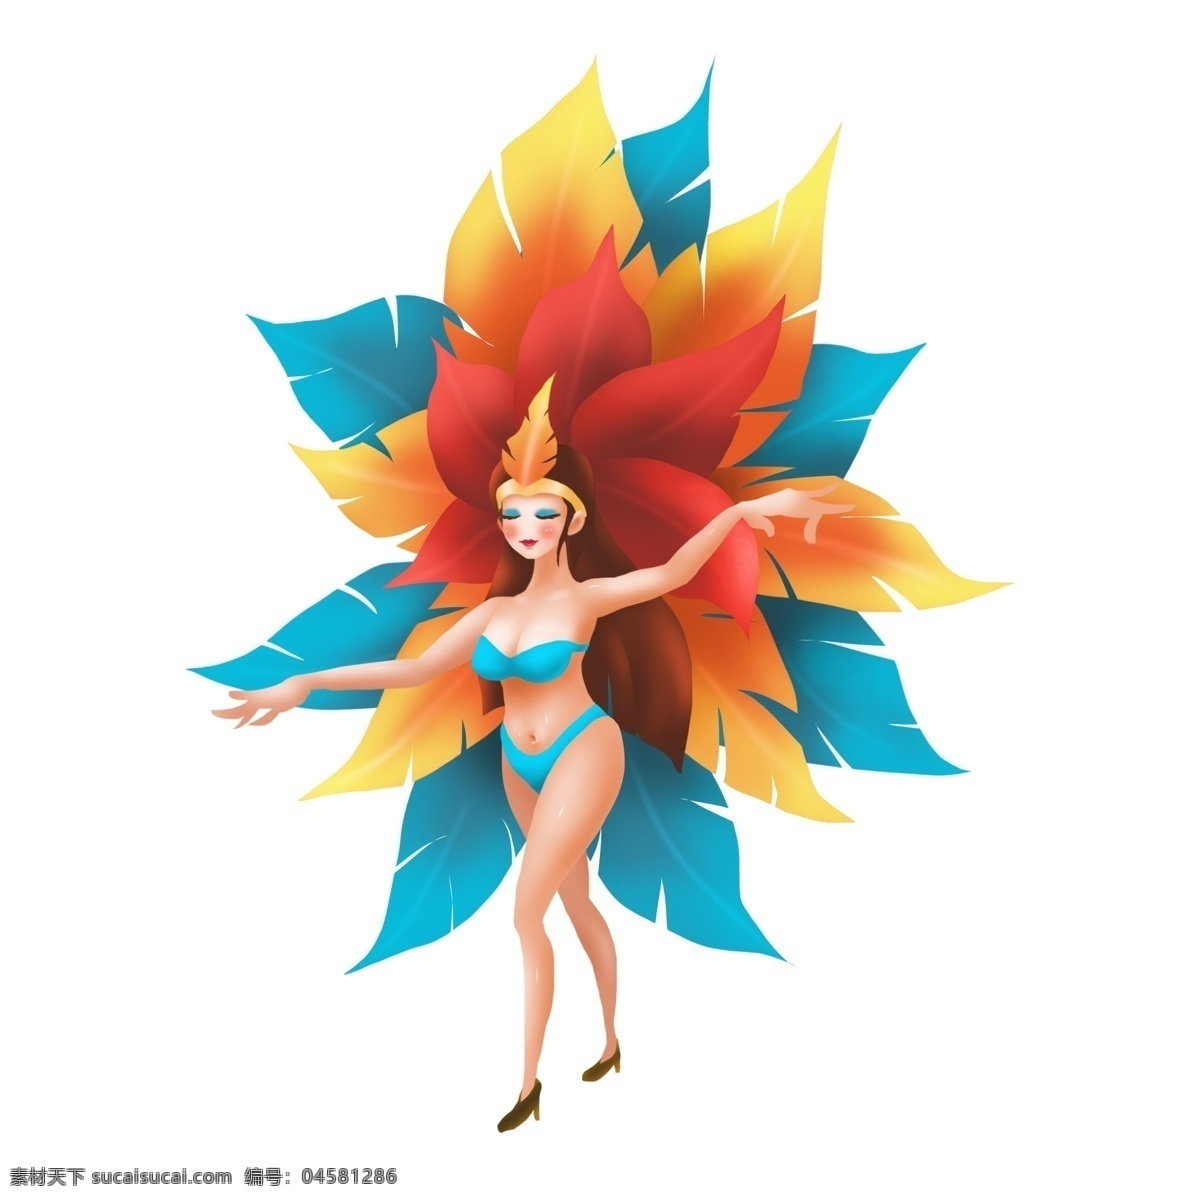 商用 高清 手绘 巴西 狂欢节 舞者 卡通 形象 狂欢节舞者 巴西狂欢节 卡通形象 可商用